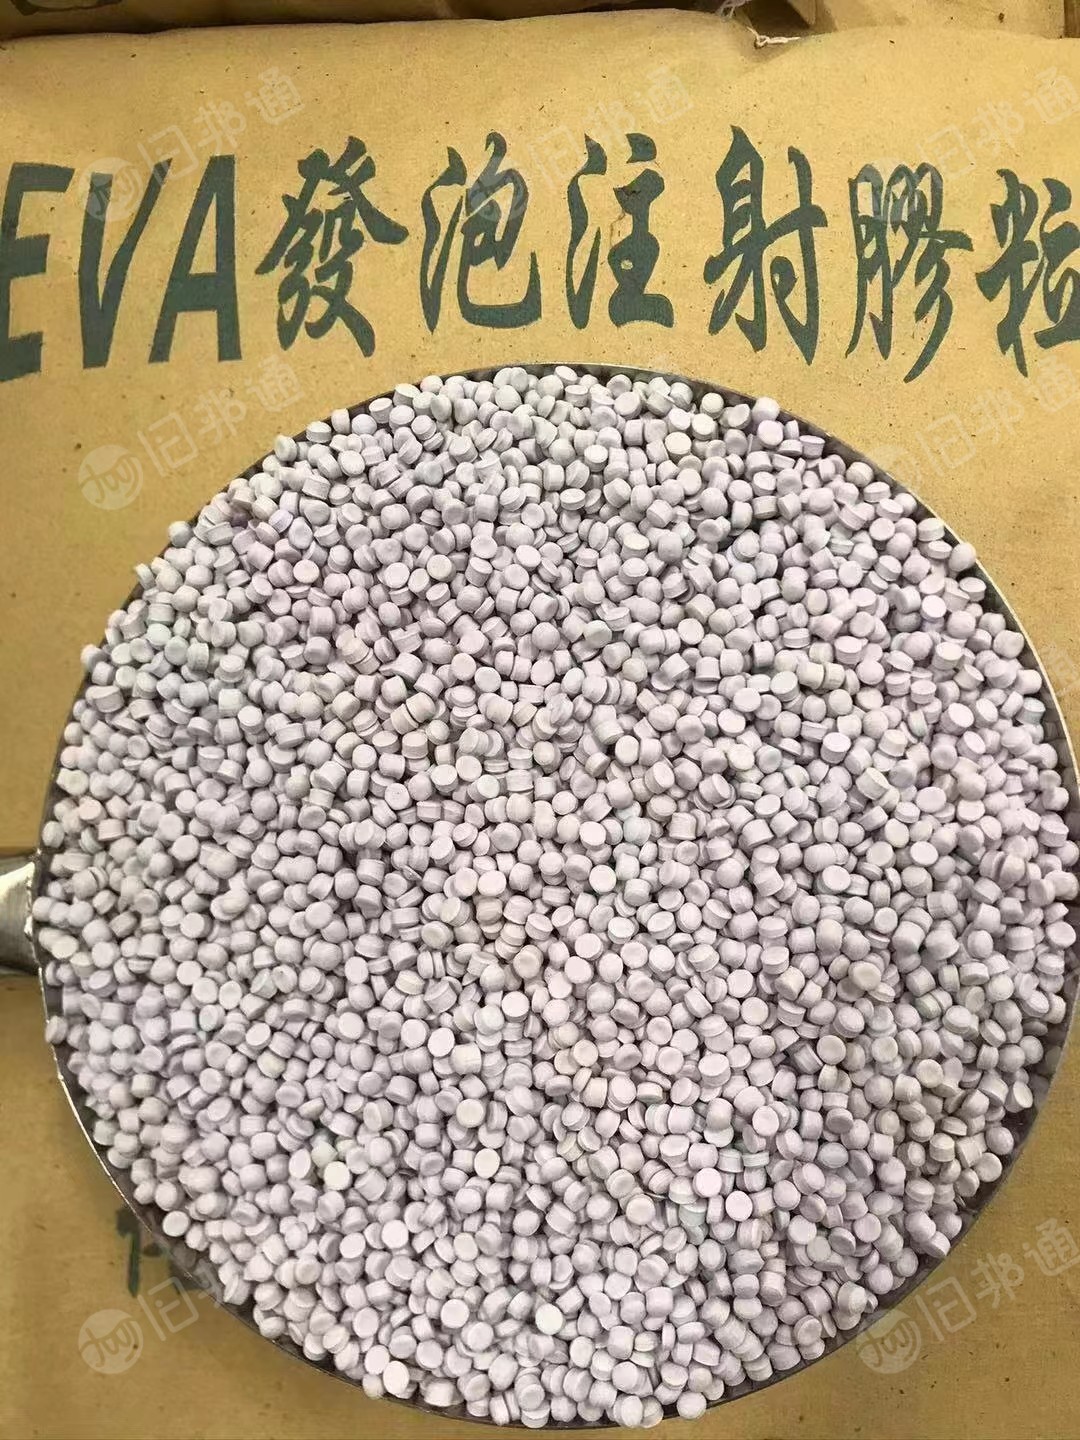 专业生产EVA发泡料米和EVA模头料米。